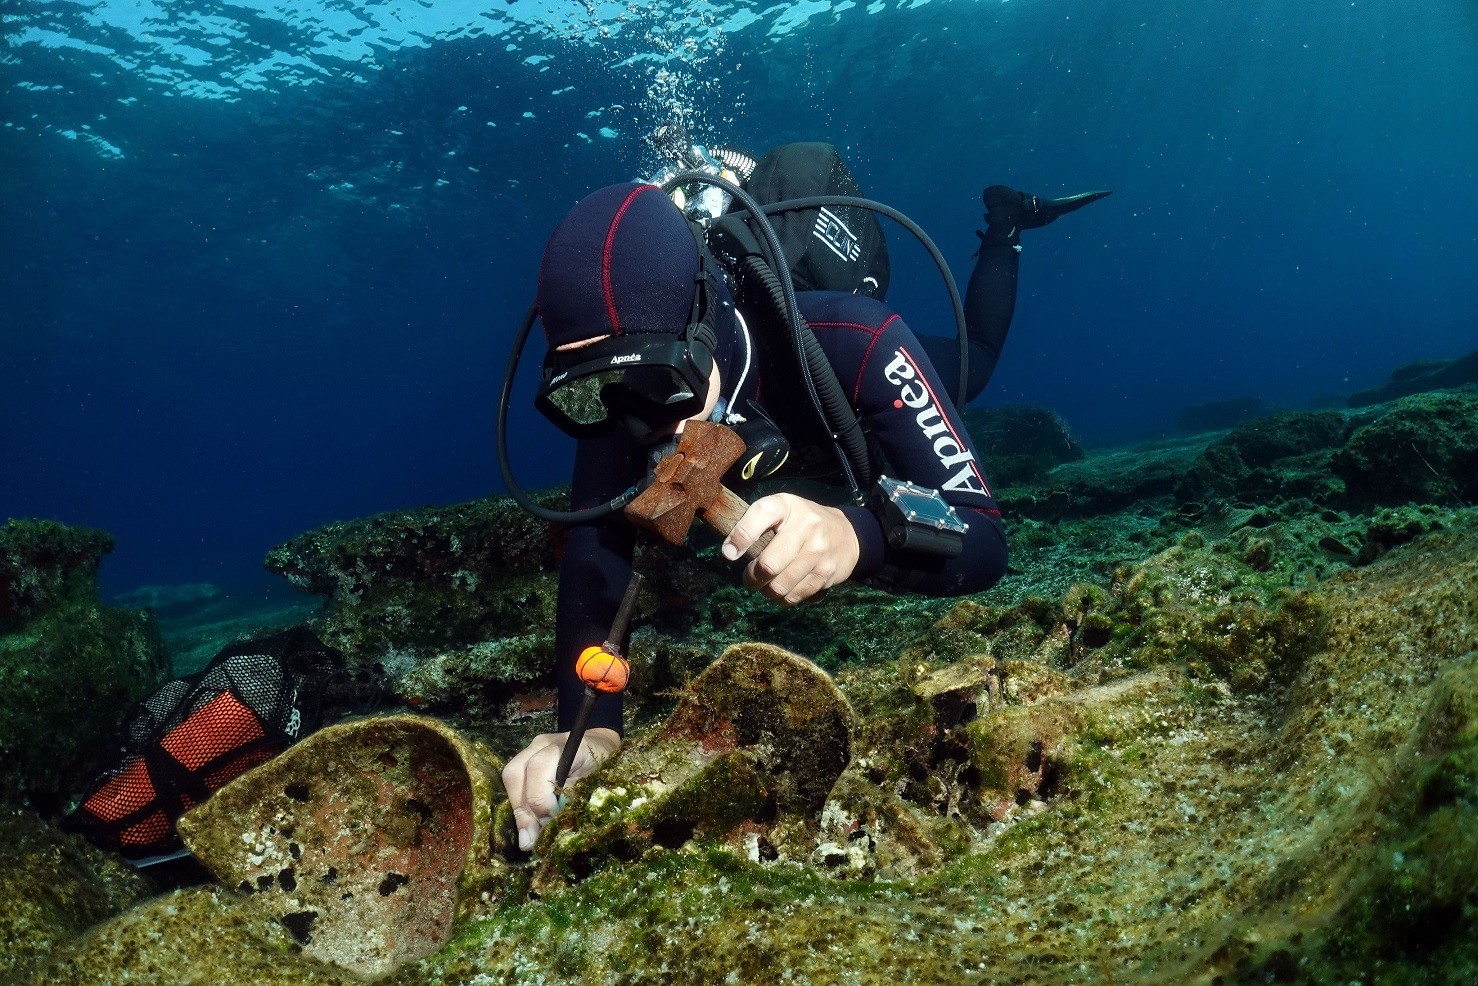 Navio romano naufragado há cerca de 1,8 mil anos é encontrado na Grécia (Foto: Ministério da Cultura Grego)